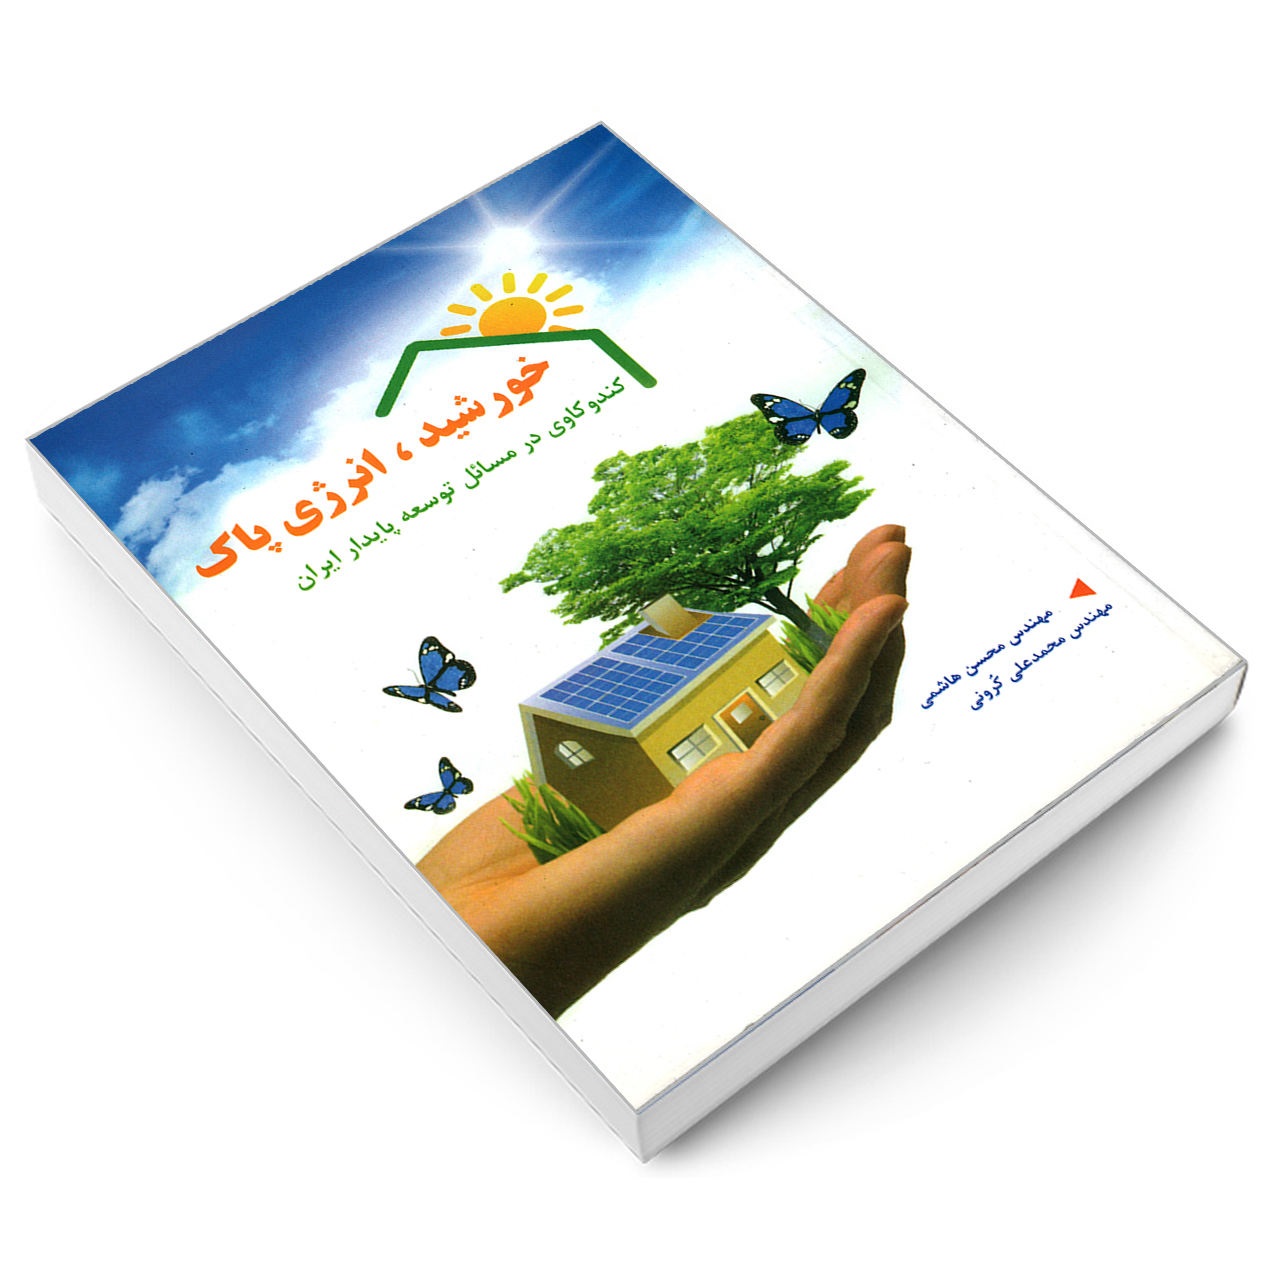 کتاب خورشید، انرژی پاک کندوکاوی در مسایل توسعه ی پایدار ایران